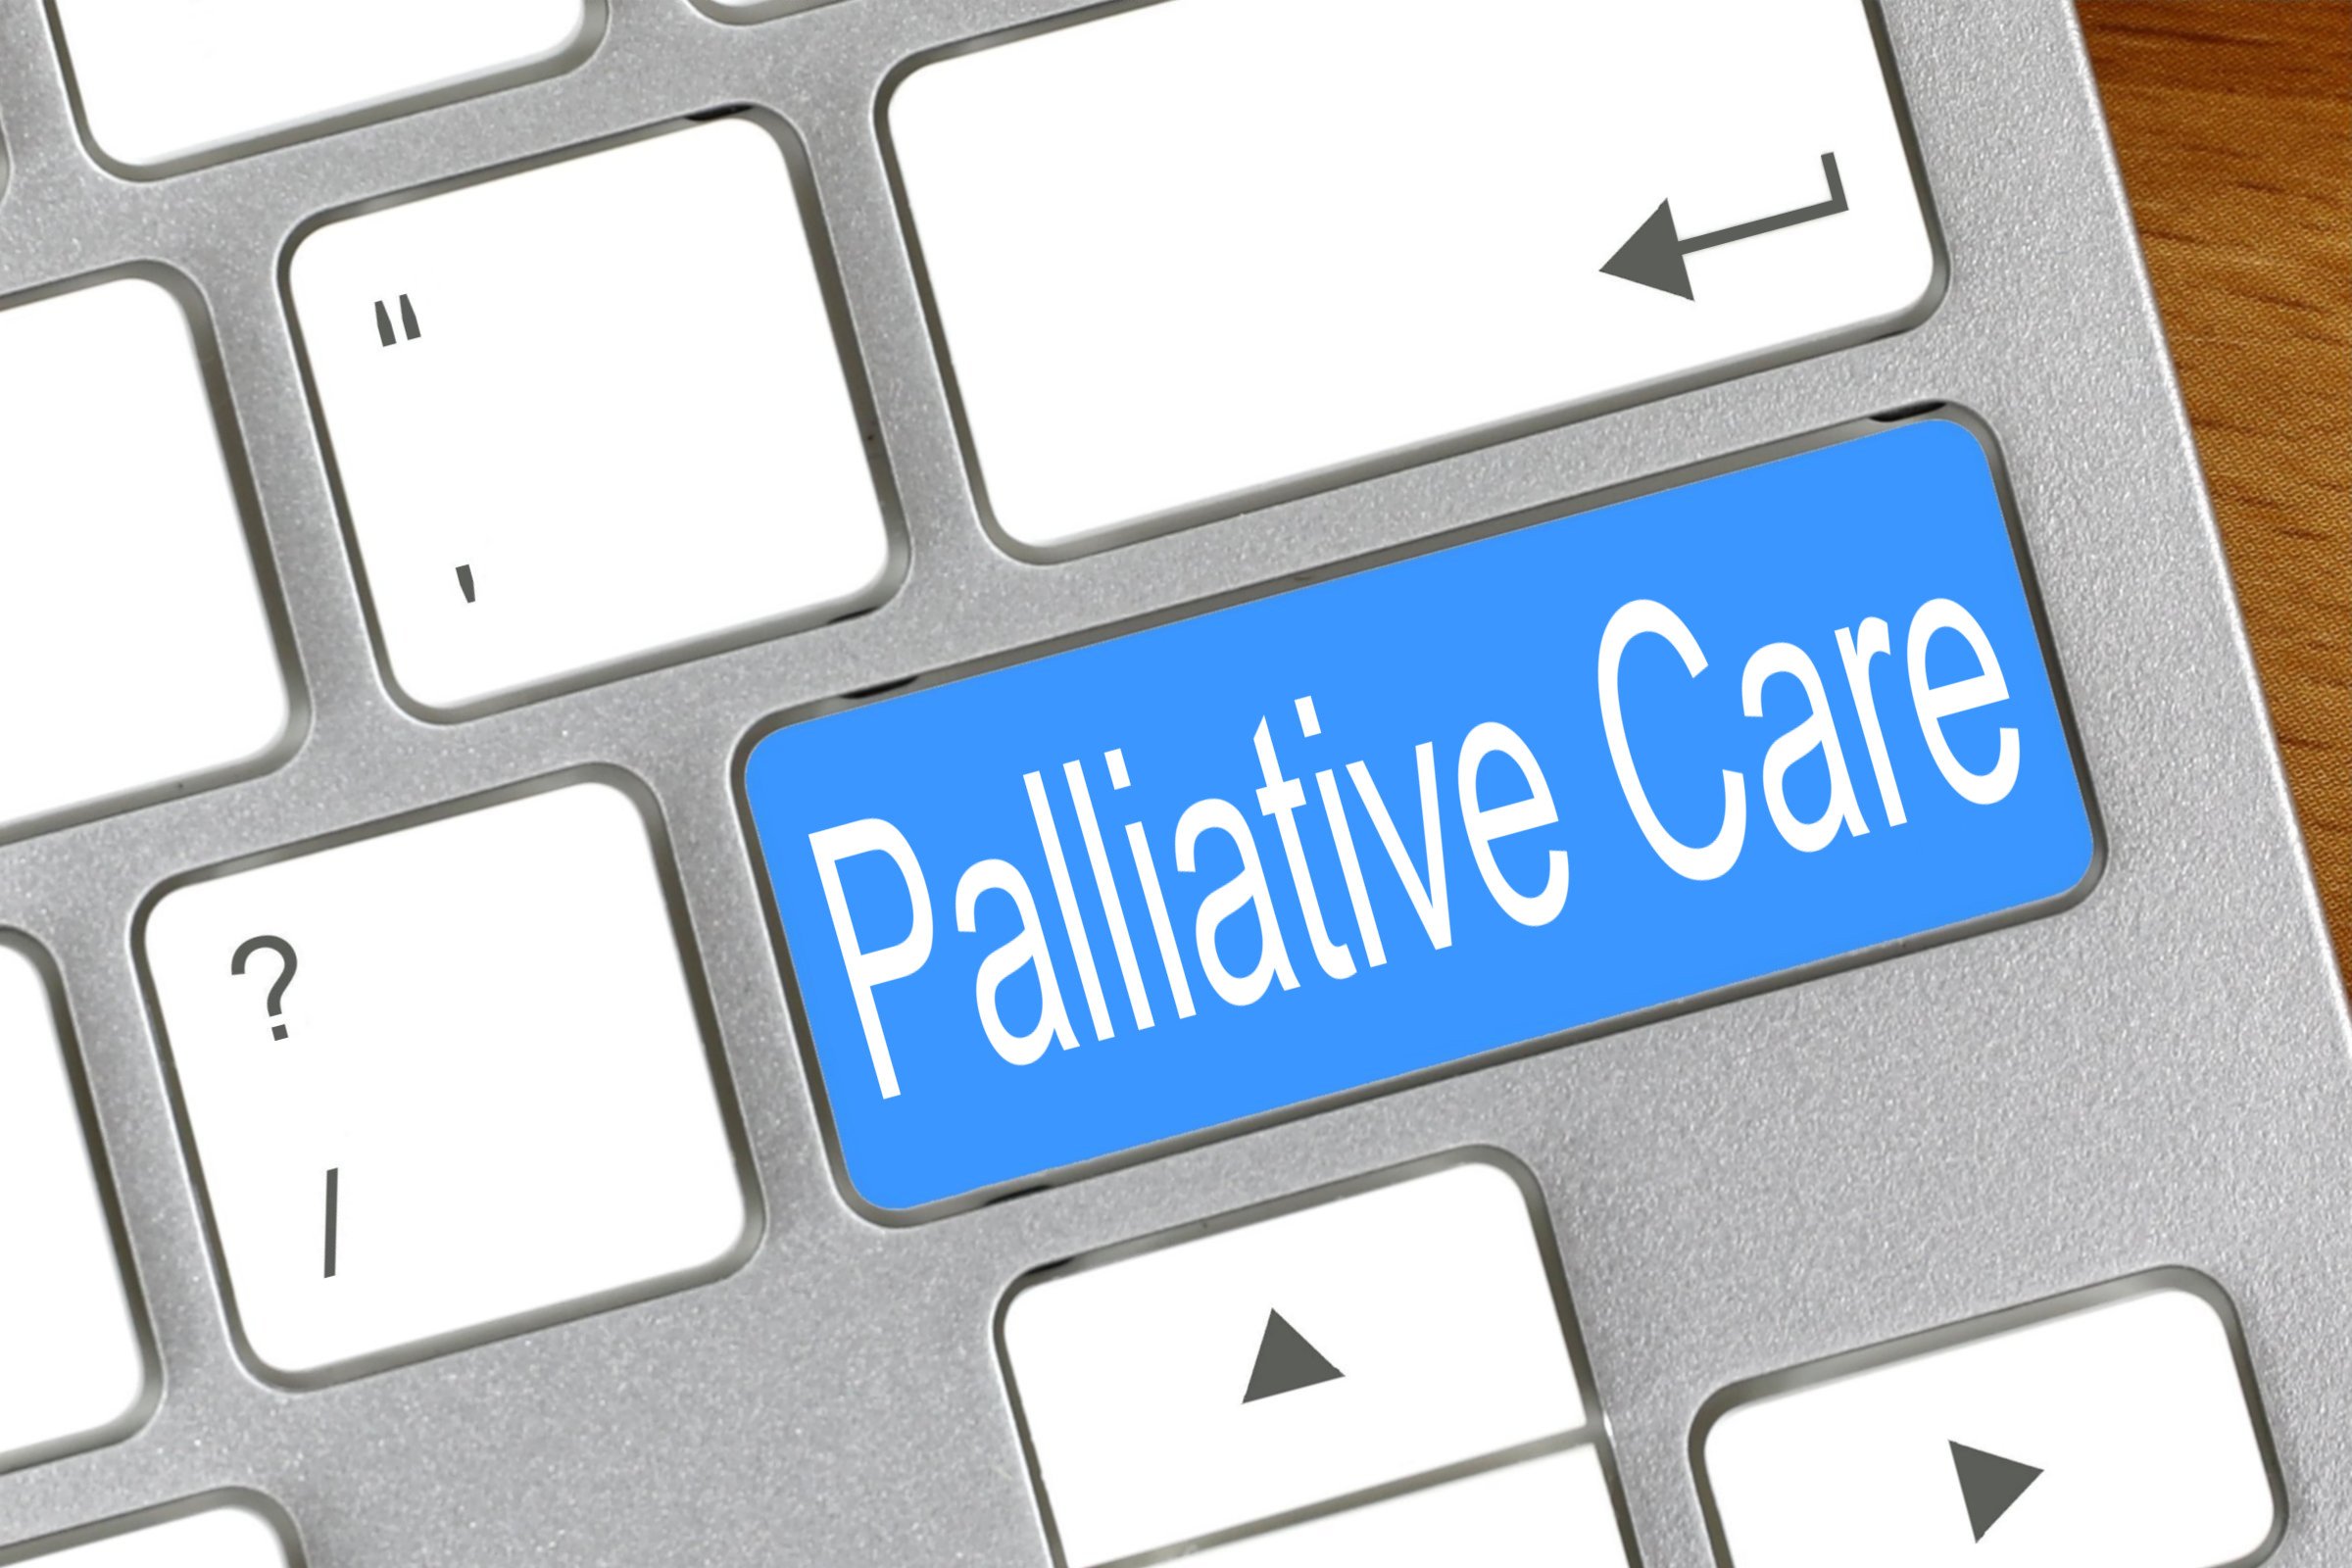 palliative care